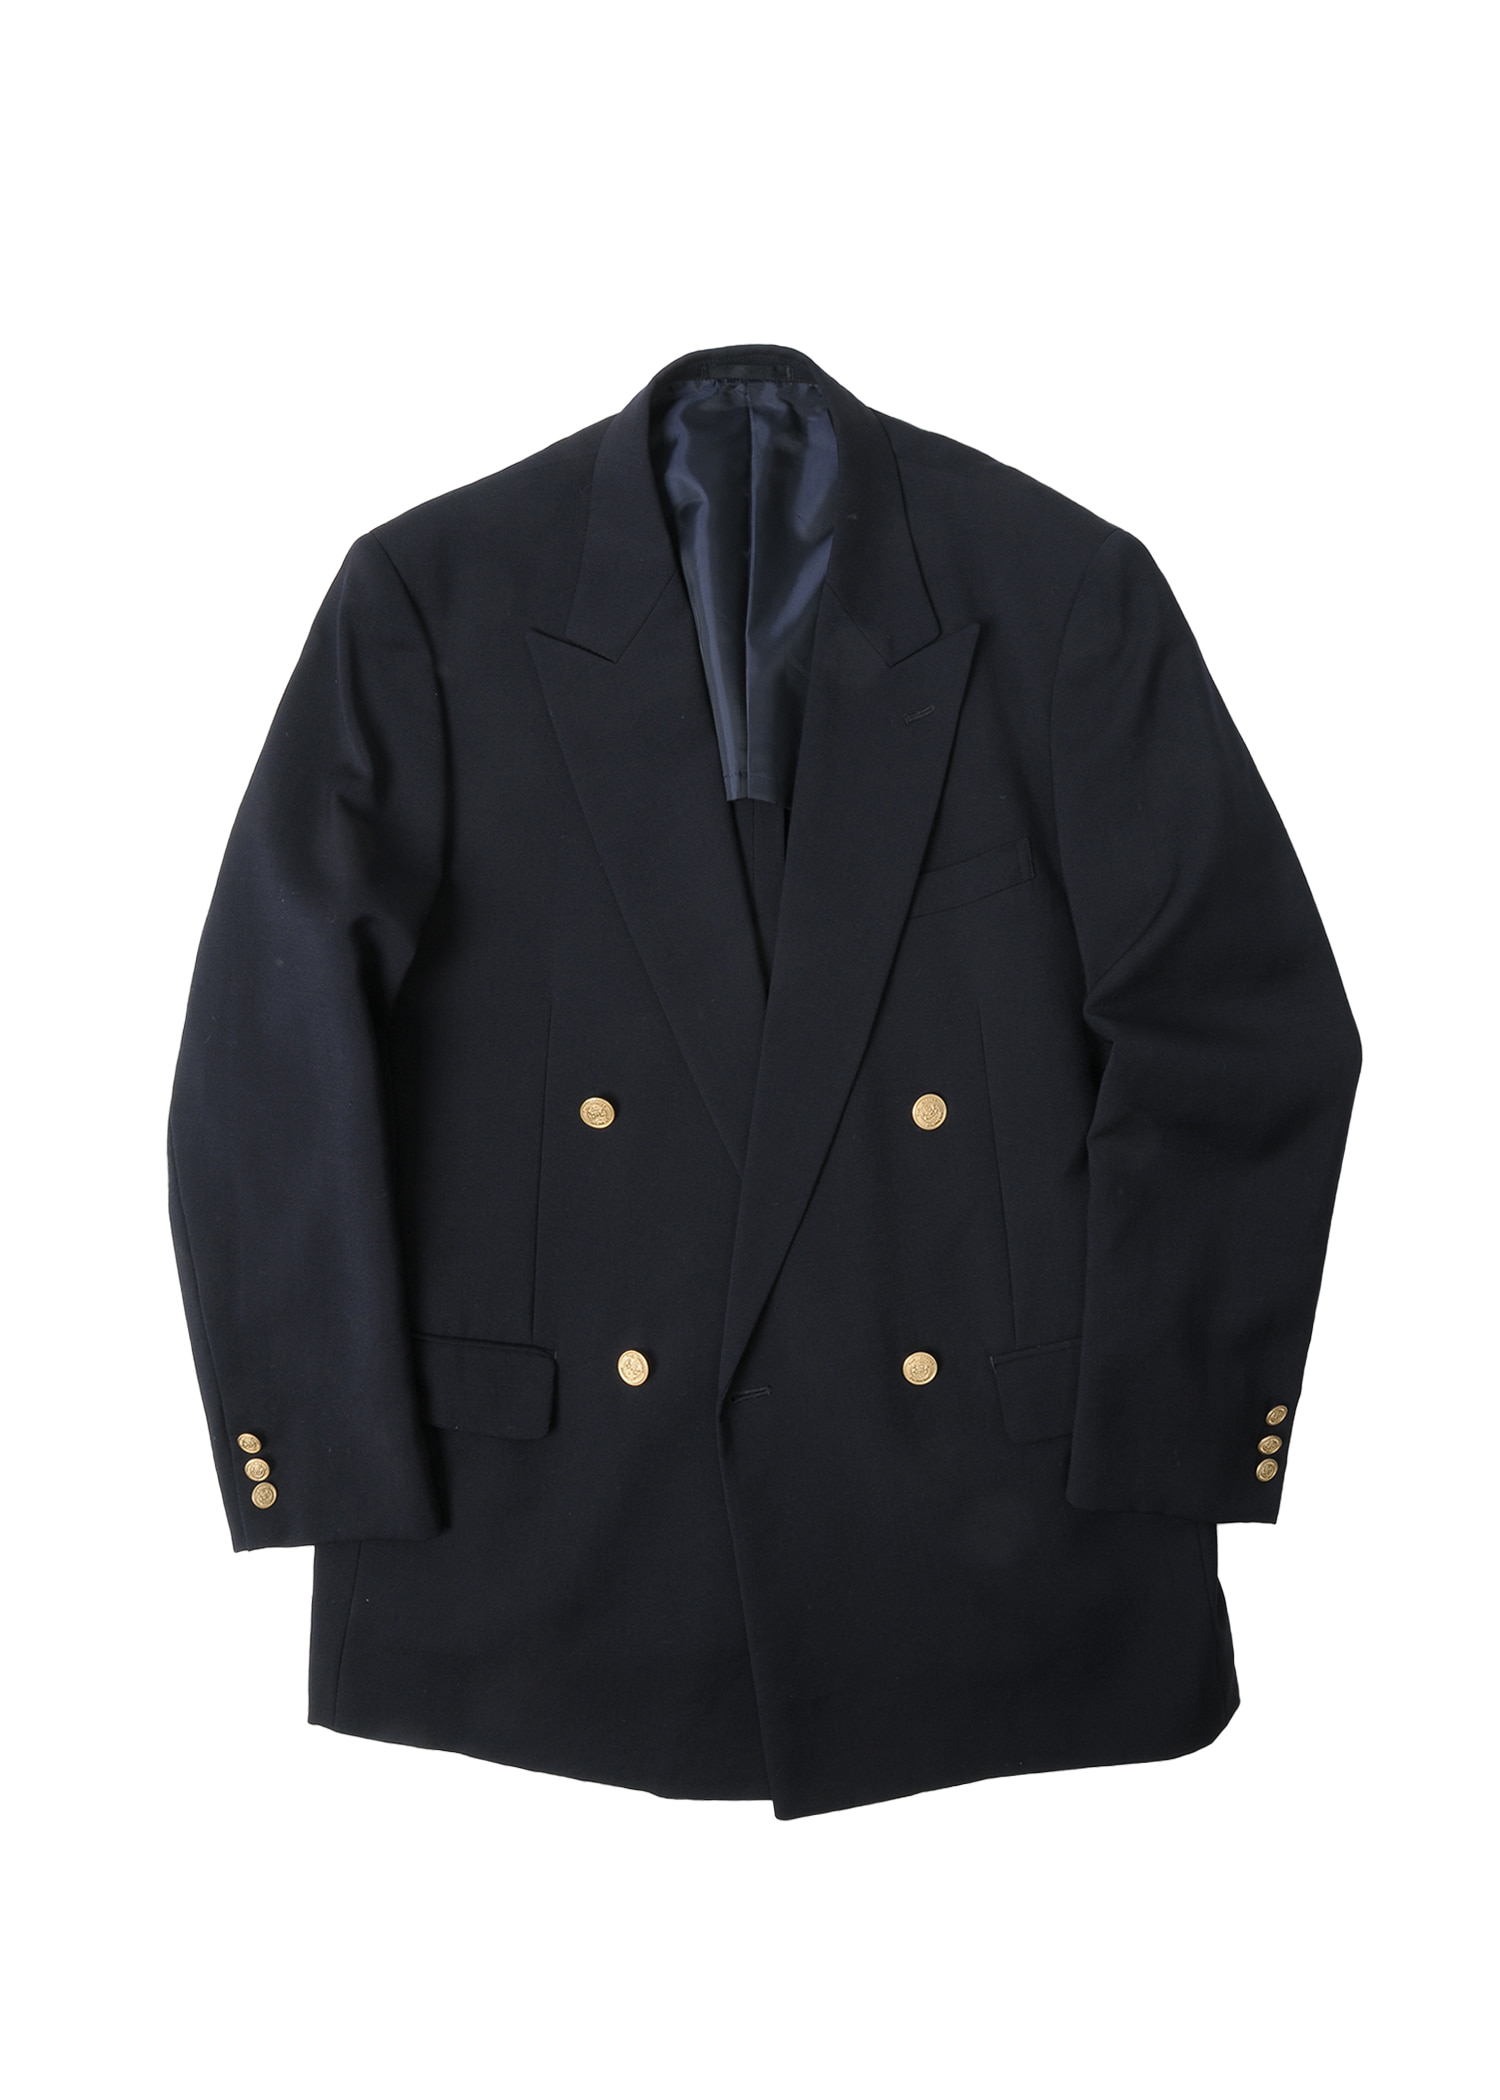 EP. Polo navy golden button jacket